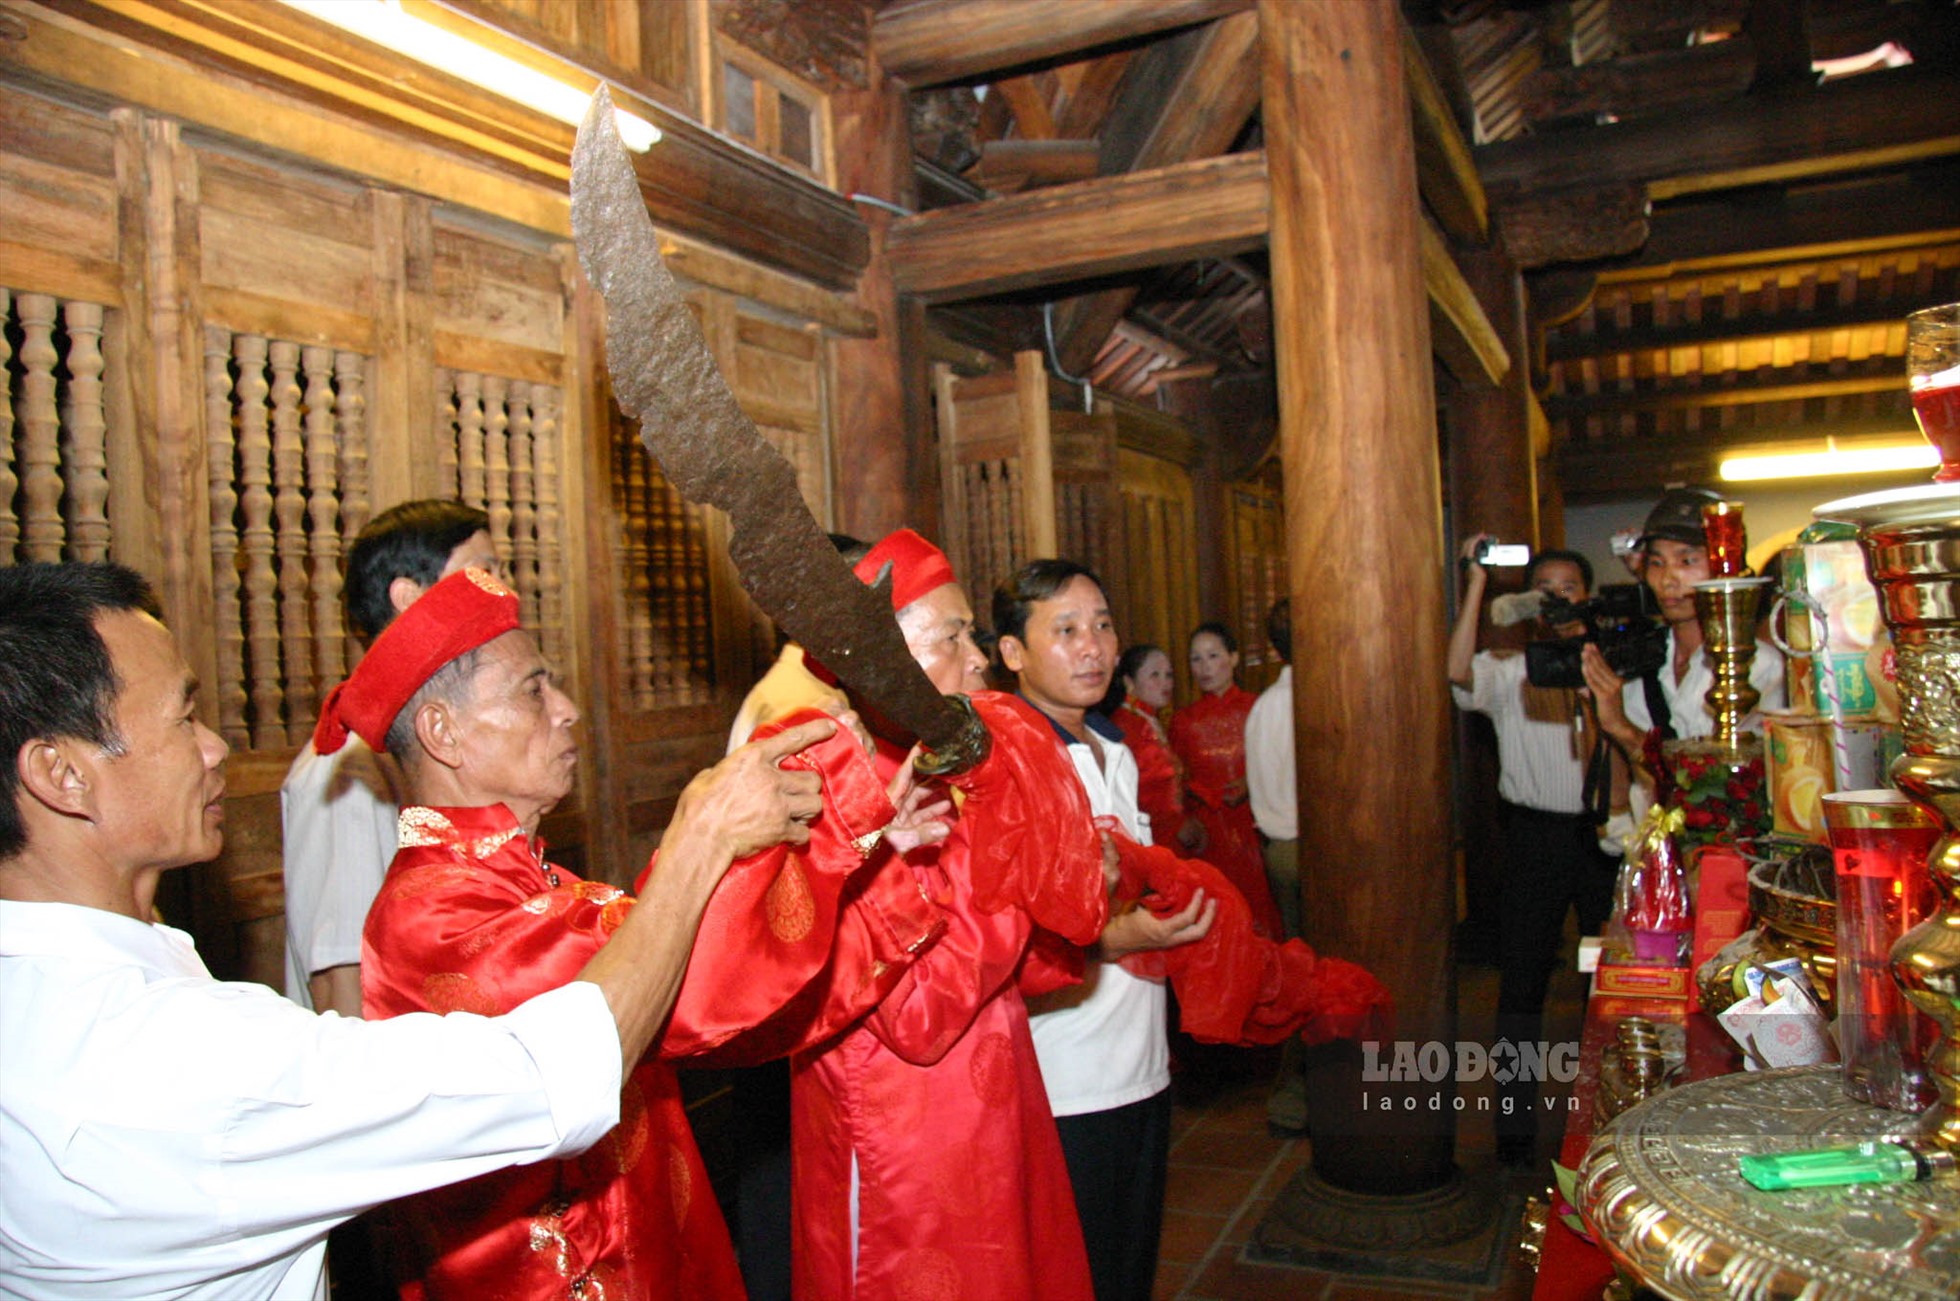 Năm 2010, Định Nam Đao đã được con cháu họ Phạm gốc Mạc ở Nam Định đưa về lưu thờ và trưng bày ở Khu tưởng niệm Vương triều Mạc tại Hải Phòng cho đến nay.